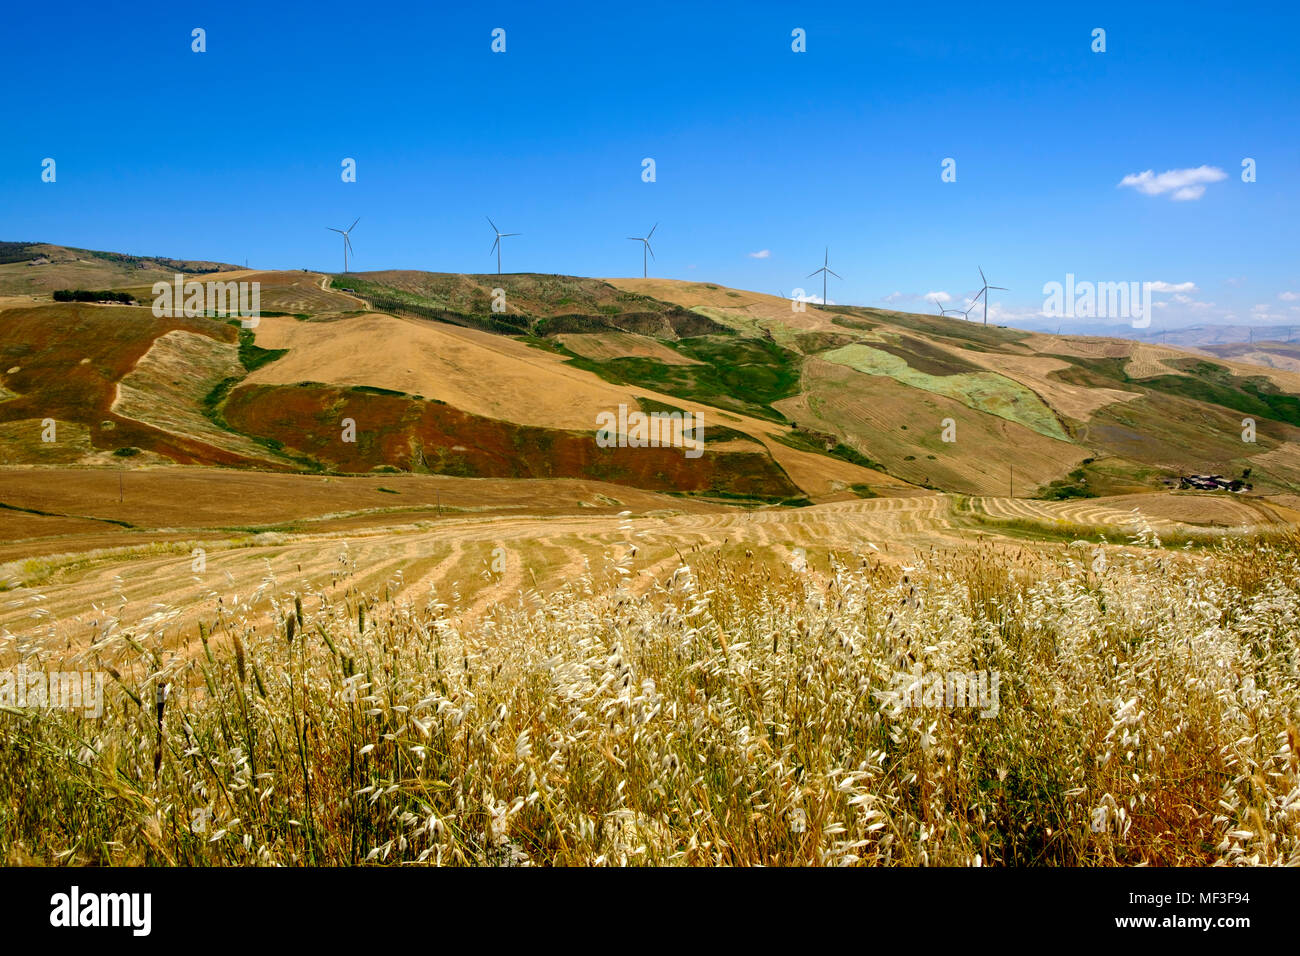 Getreidefelder und Windräder an der SS118, bei Corleone, Provinz Palermo, Sizilien, Italien Foto Stock